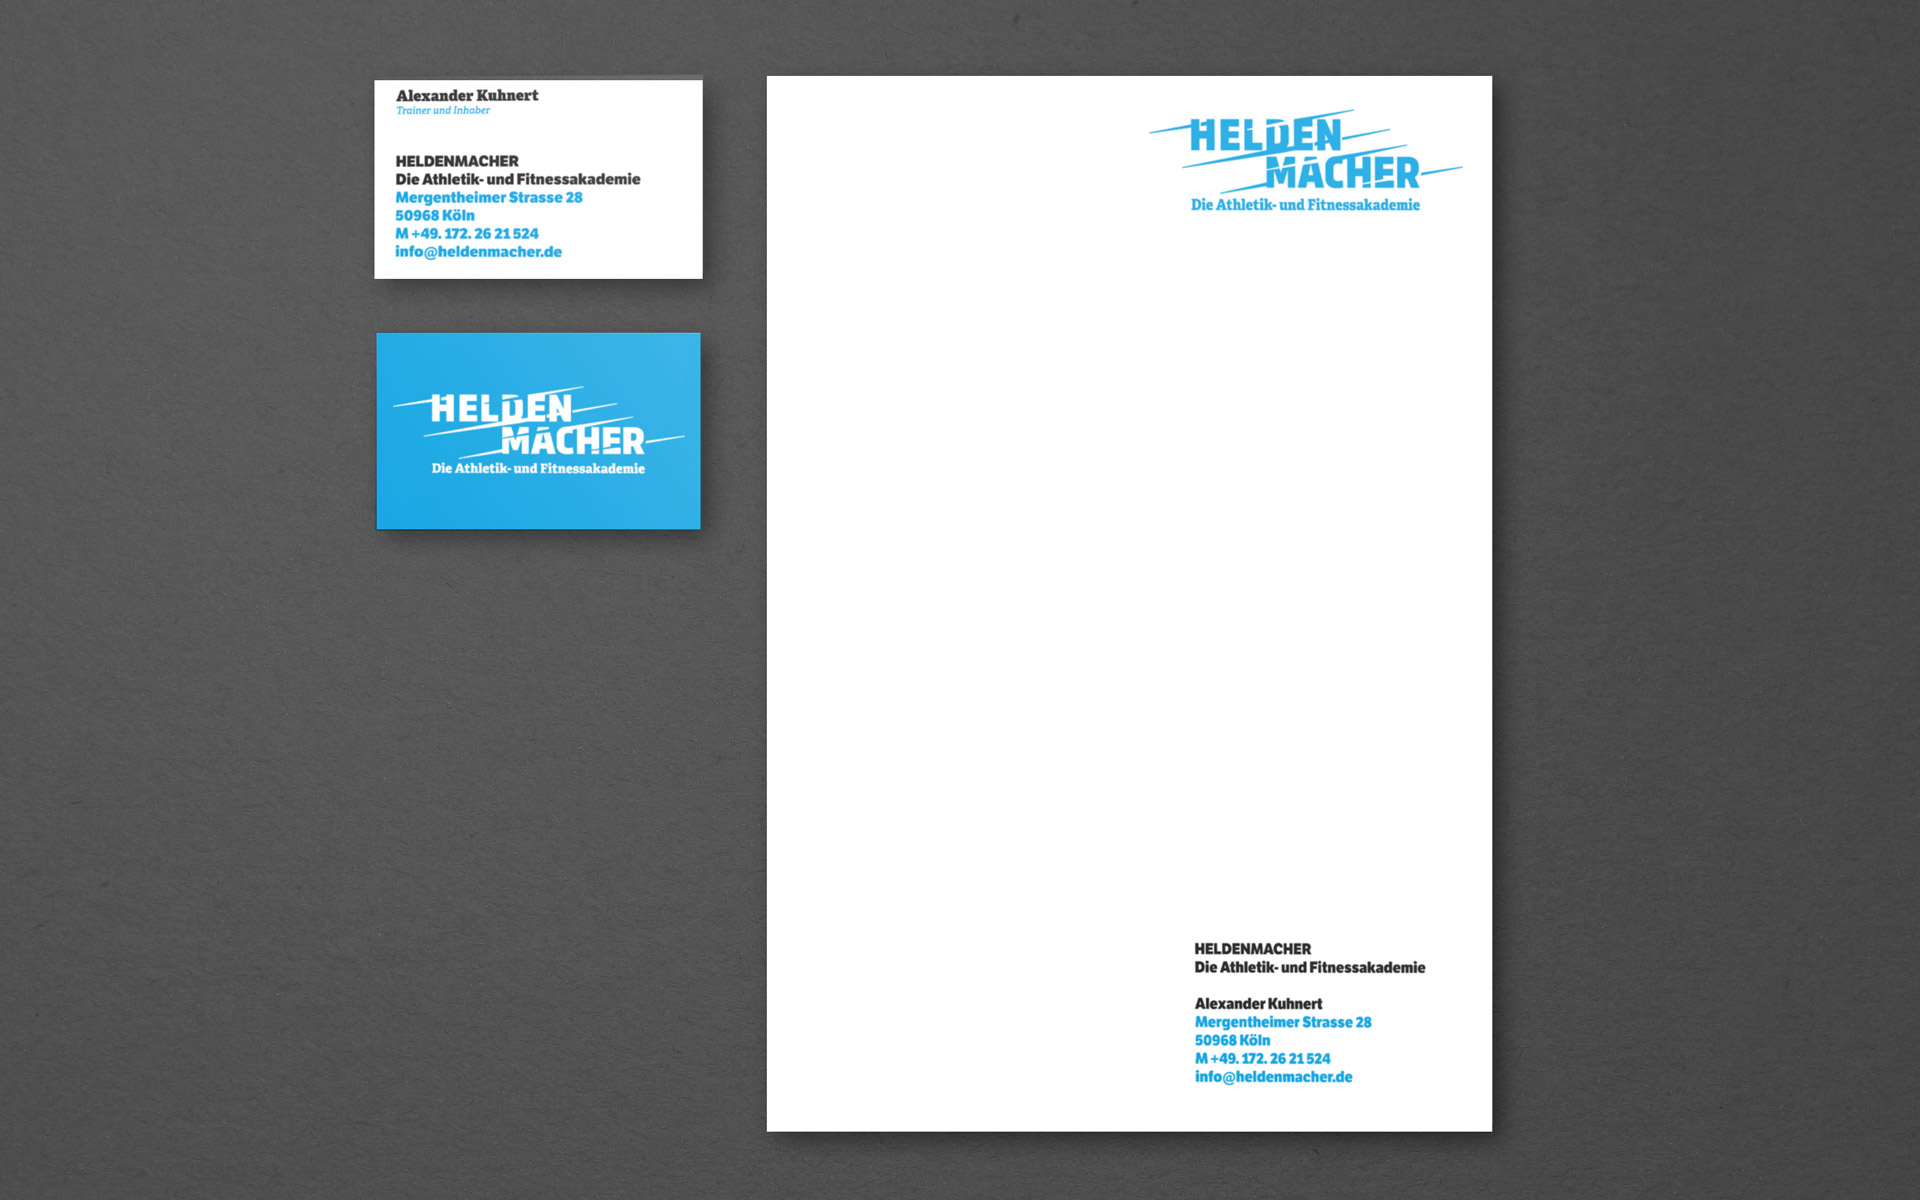 Corporate Design HELDENMACHER, Stationery, Entwurf der Geschäftsausstattung, Briefbogen und Visitenkarte